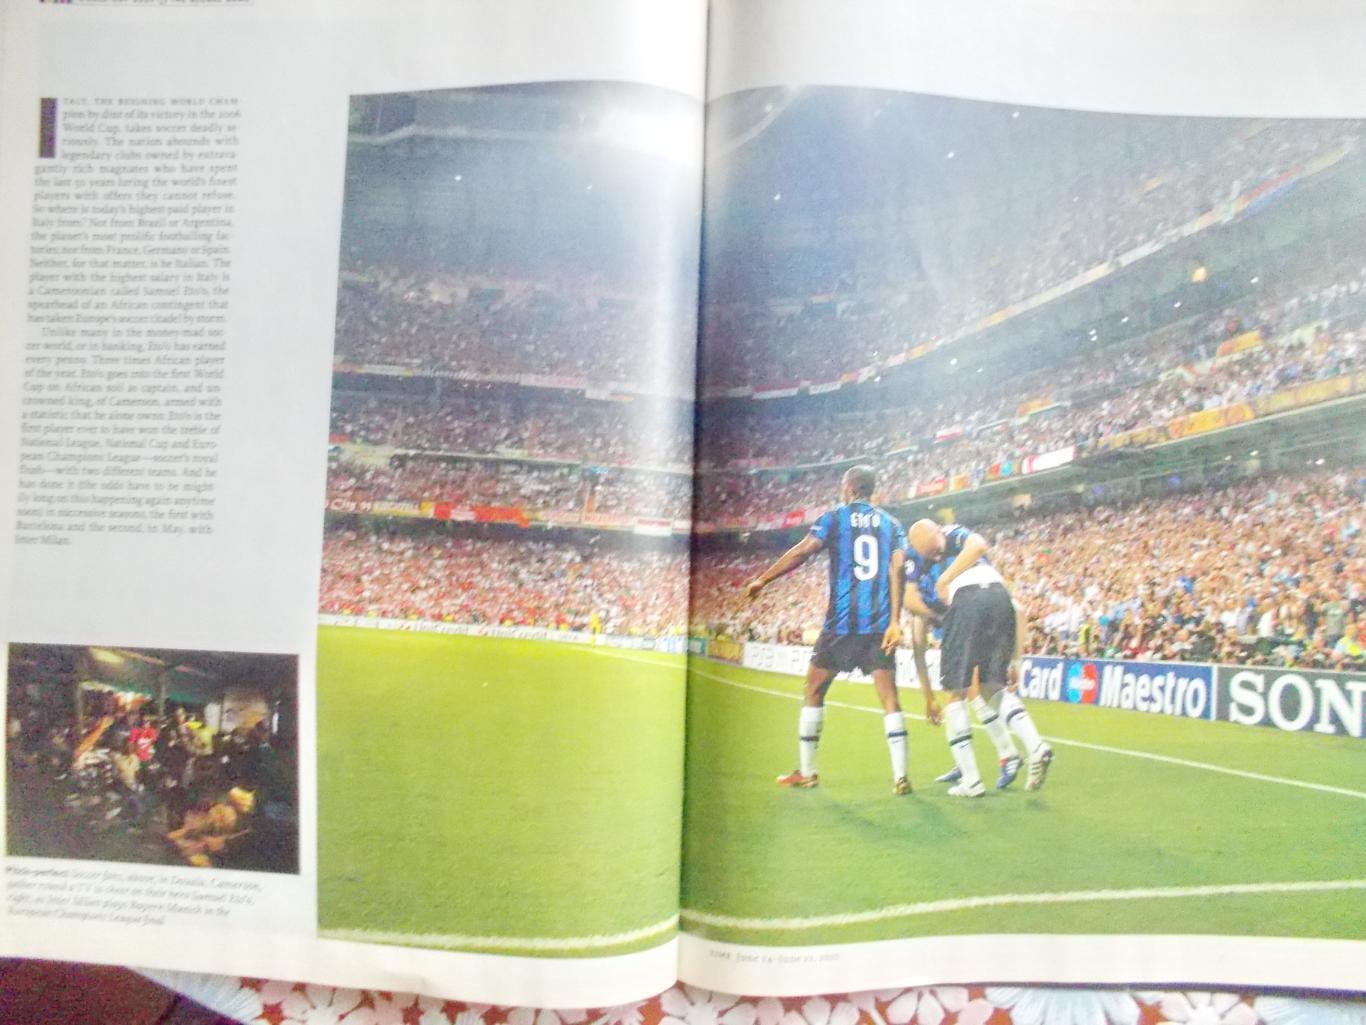 Журнал TIME. О ЧМ-2010 по футболу в Южной Африке. Июнь 2010 год. 2